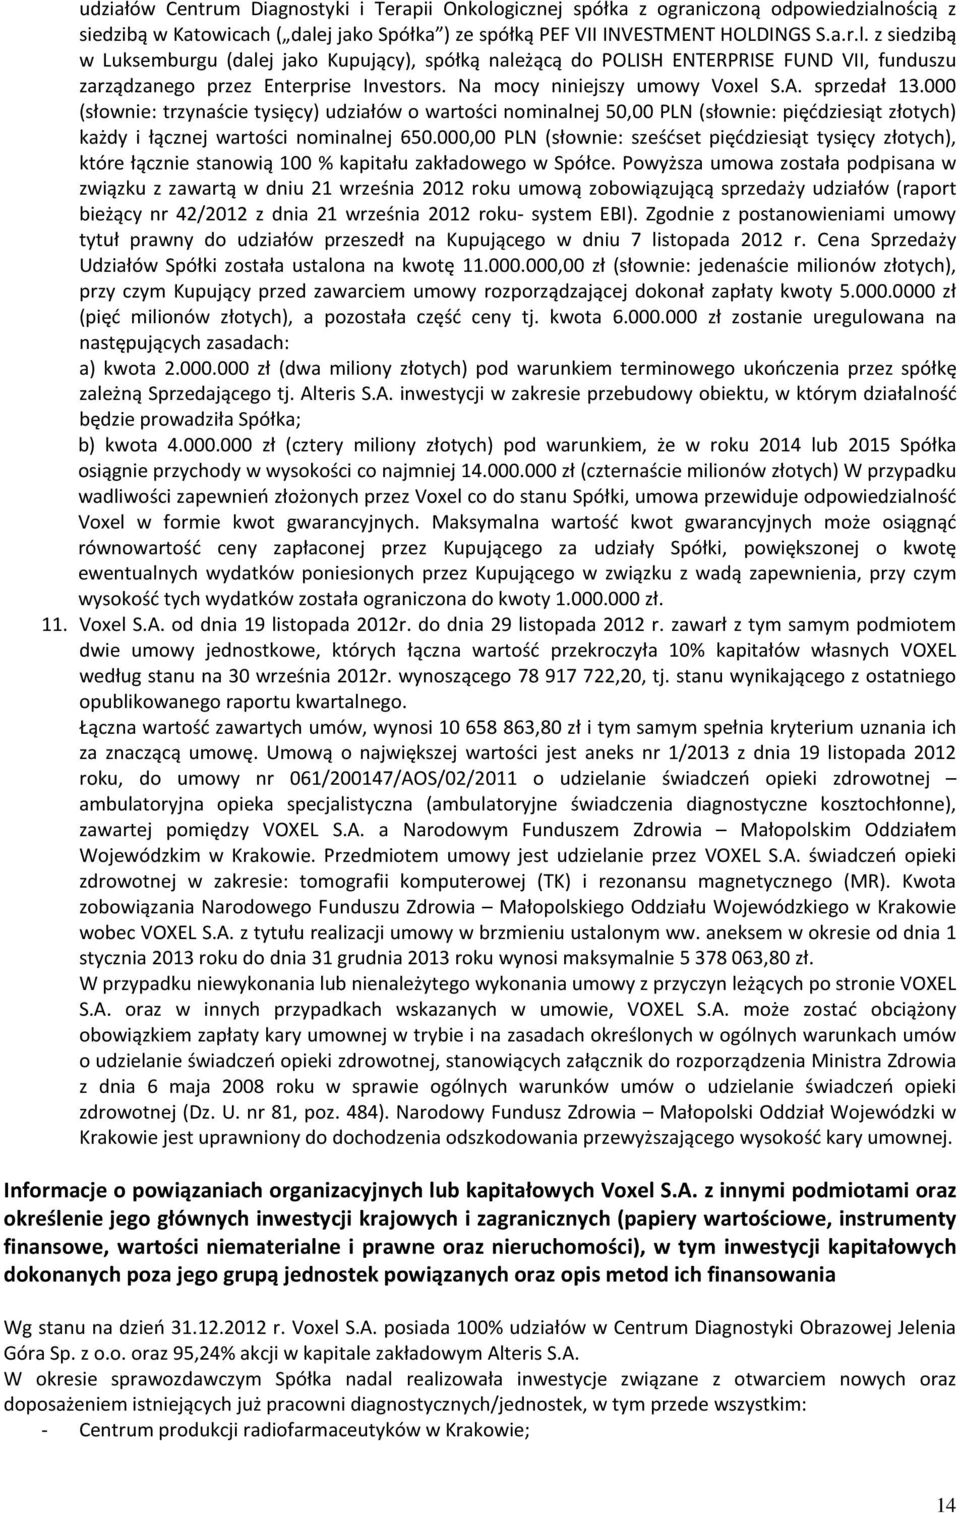 000,00 PLN (słownie: sześćset pięćdziesiąt tysięcy złotych), które łącznie stanowią 100 % kapitału zakładowego w Spółce.